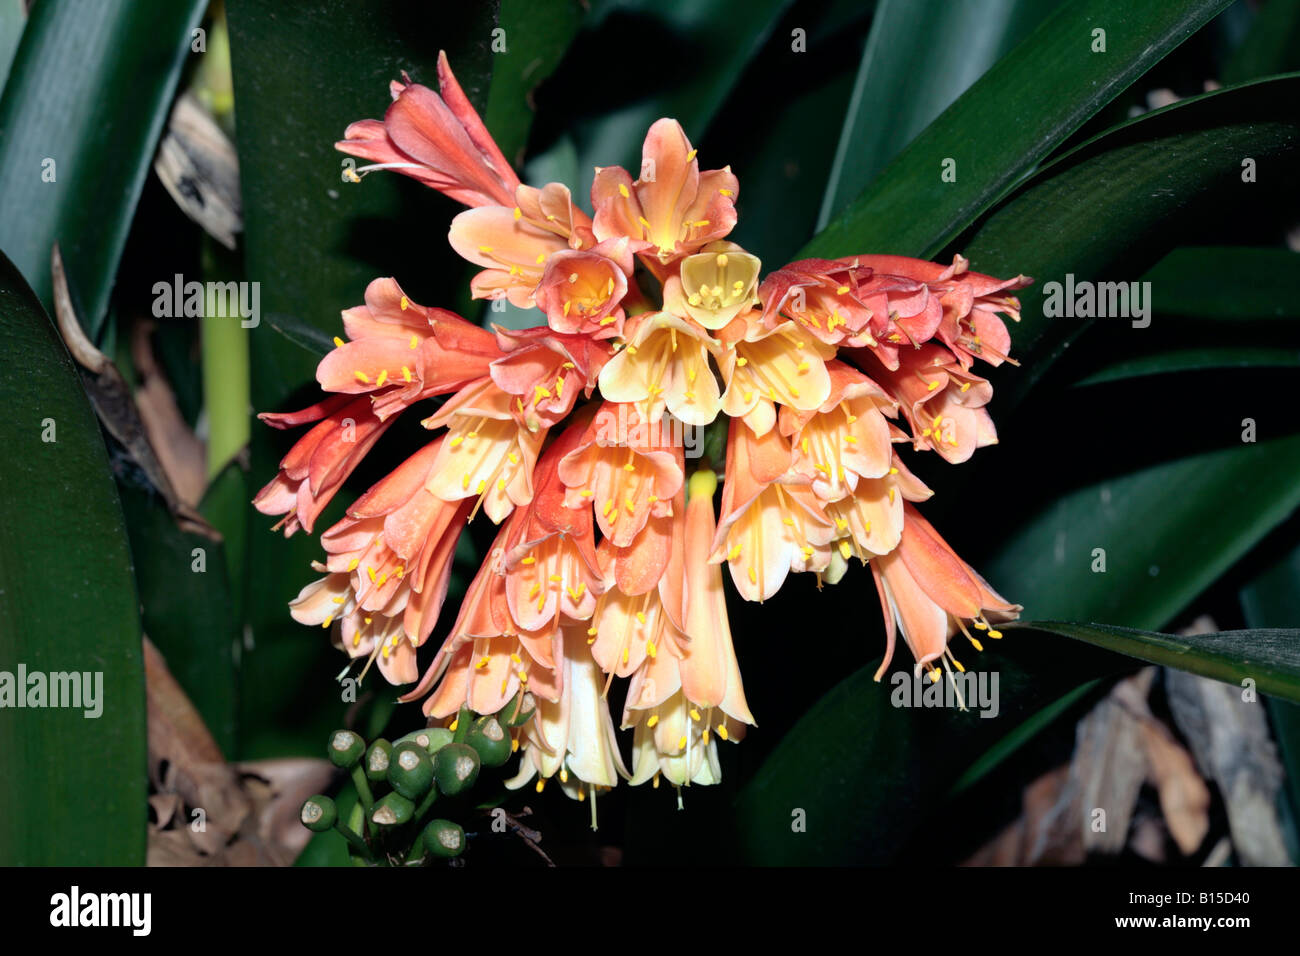 Clivias x Aganpanthus Flower hybrid Stock Photo